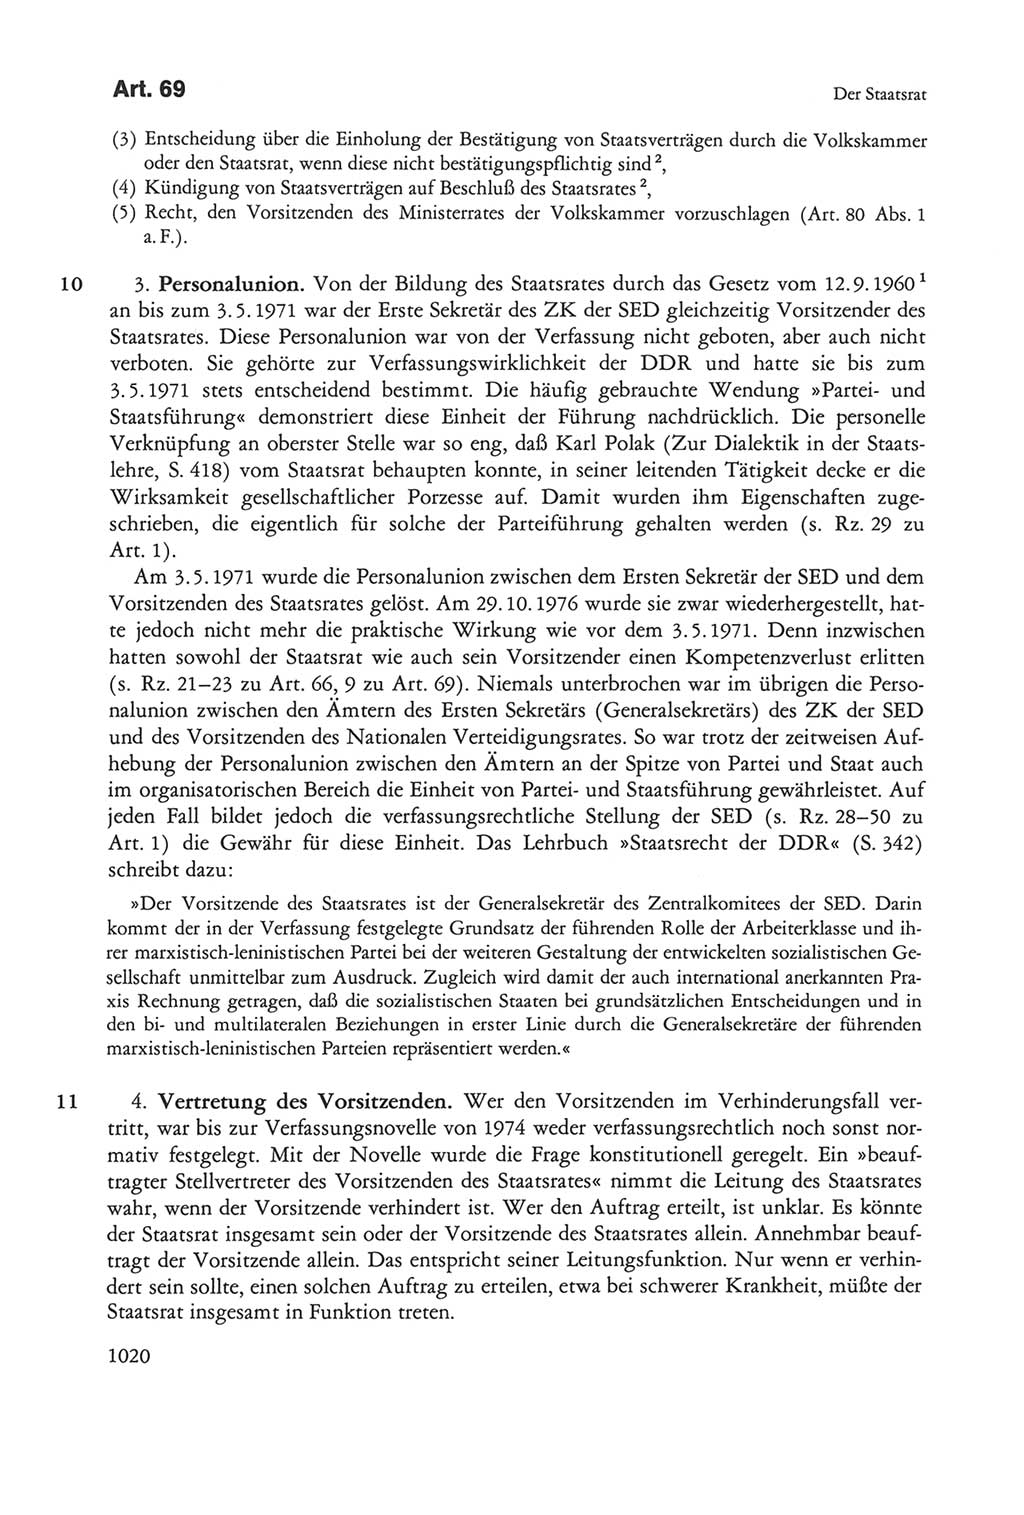 Die sozialistische Verfassung der Deutschen Demokratischen Republik (DDR), Kommentar 1982, Seite 1020 (Soz. Verf. DDR Komm. 1982, S. 1020)